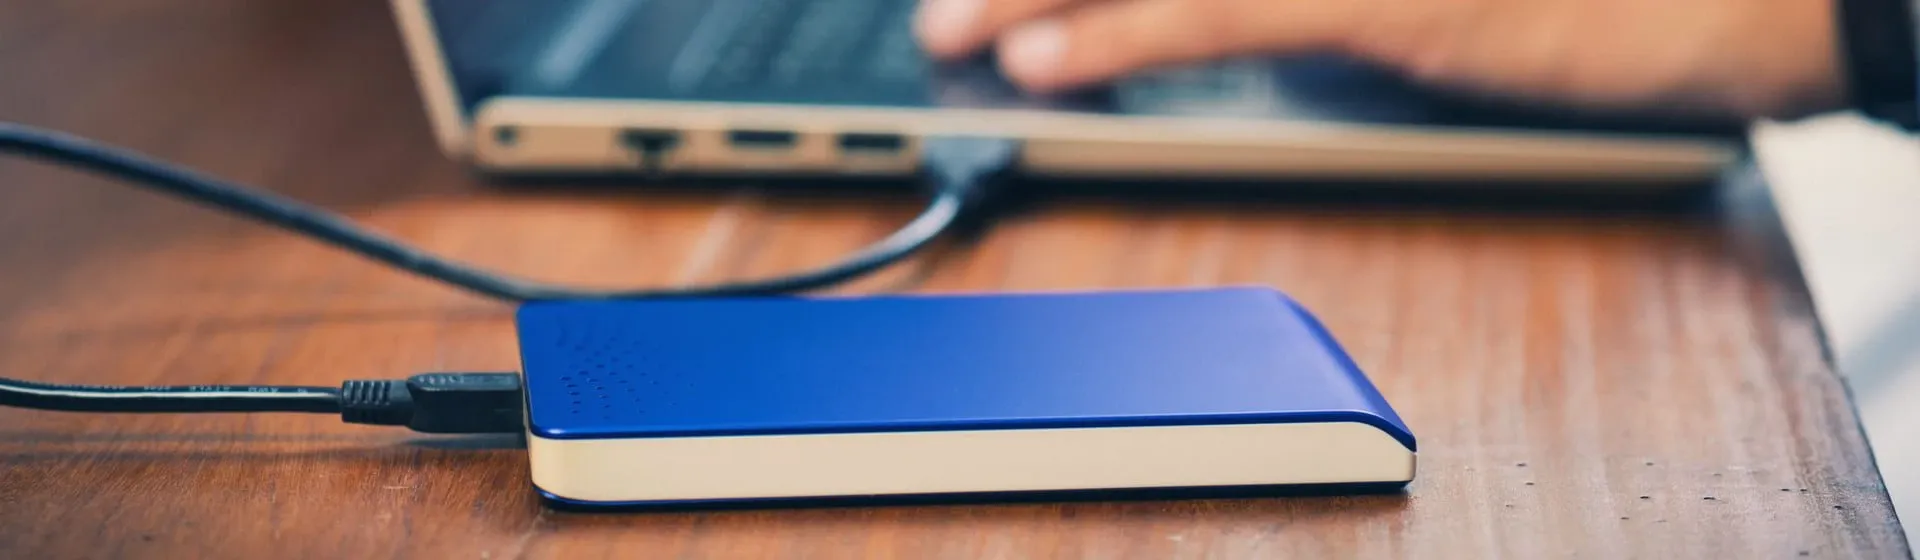 HD externo azul conectado à notebook sobre mesa de madeira